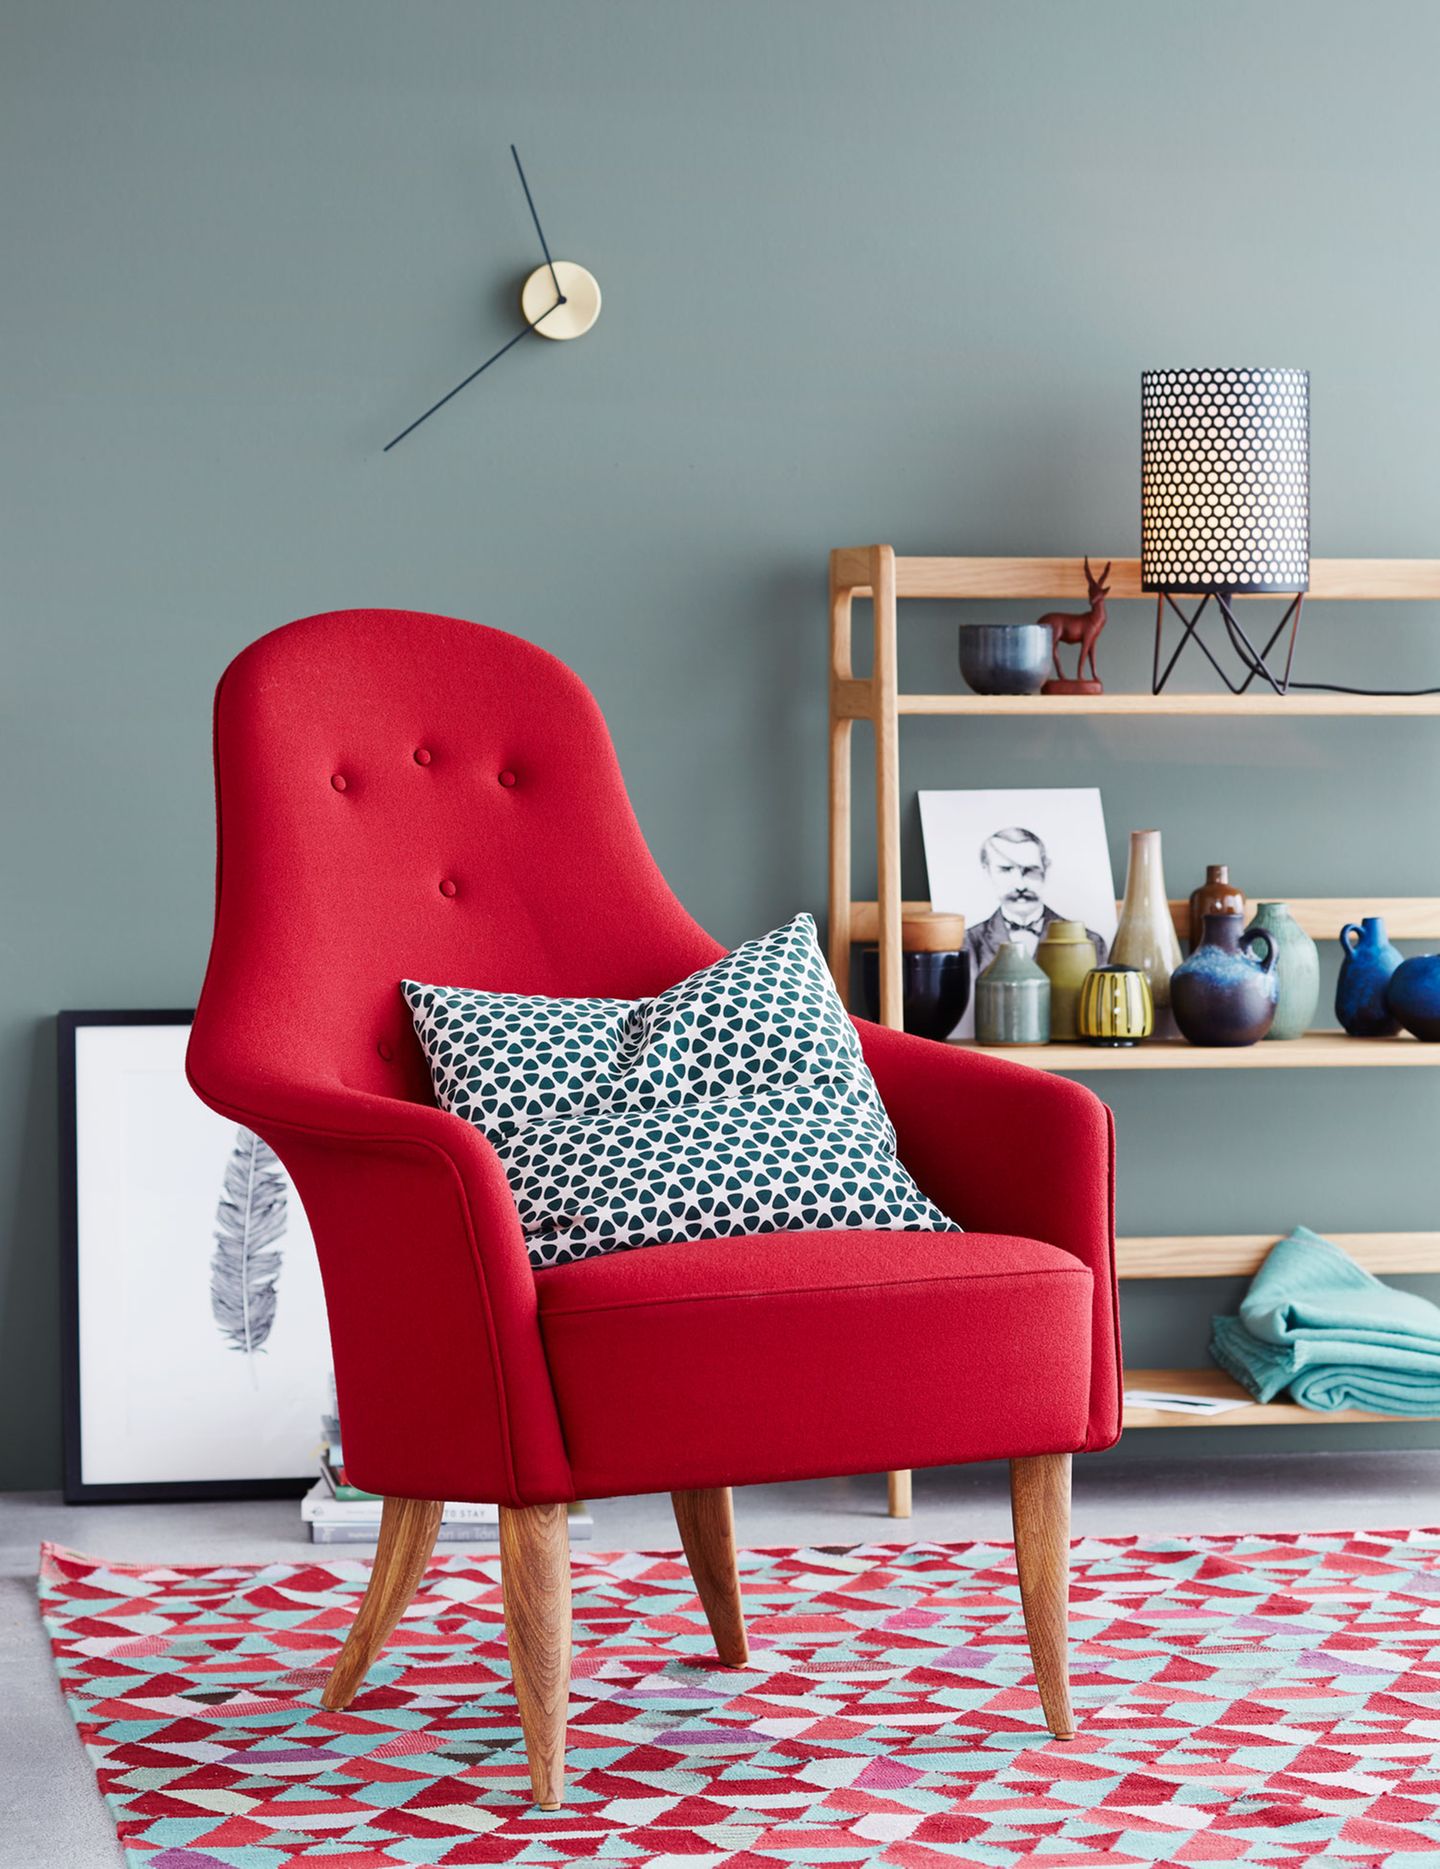 Einrichten mit Farben: Sessel in Rot vor einer Wand in Grau